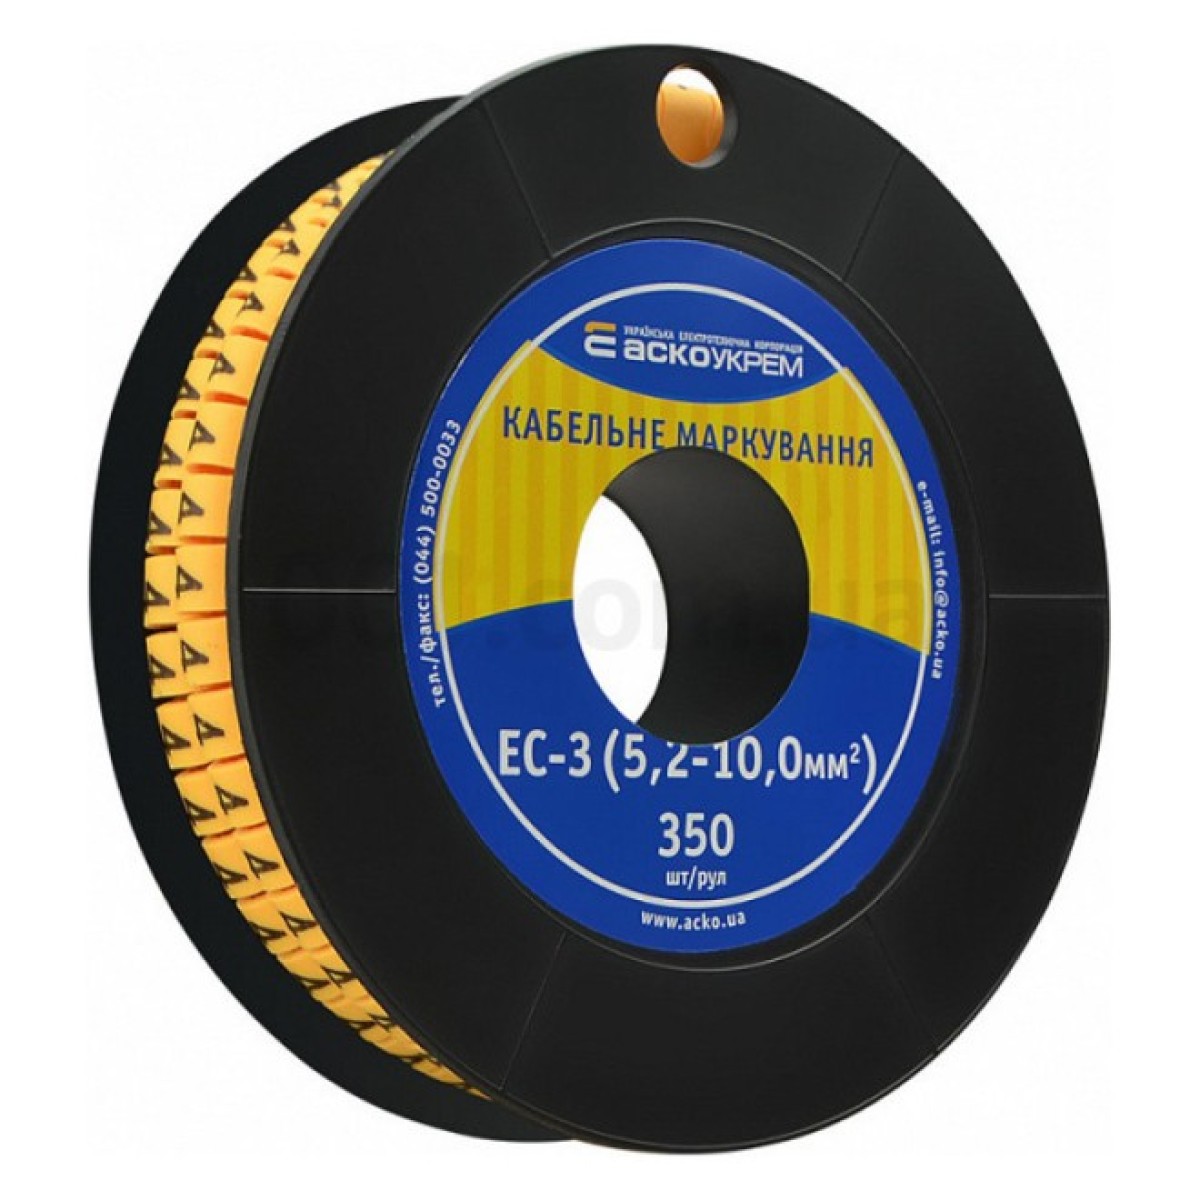 Маркировка EC-3 для кабеля 5,2-10,0 мм² символ «4» (рулон 250 шт.), АСКО-УКРЕМ 256_256.jpg